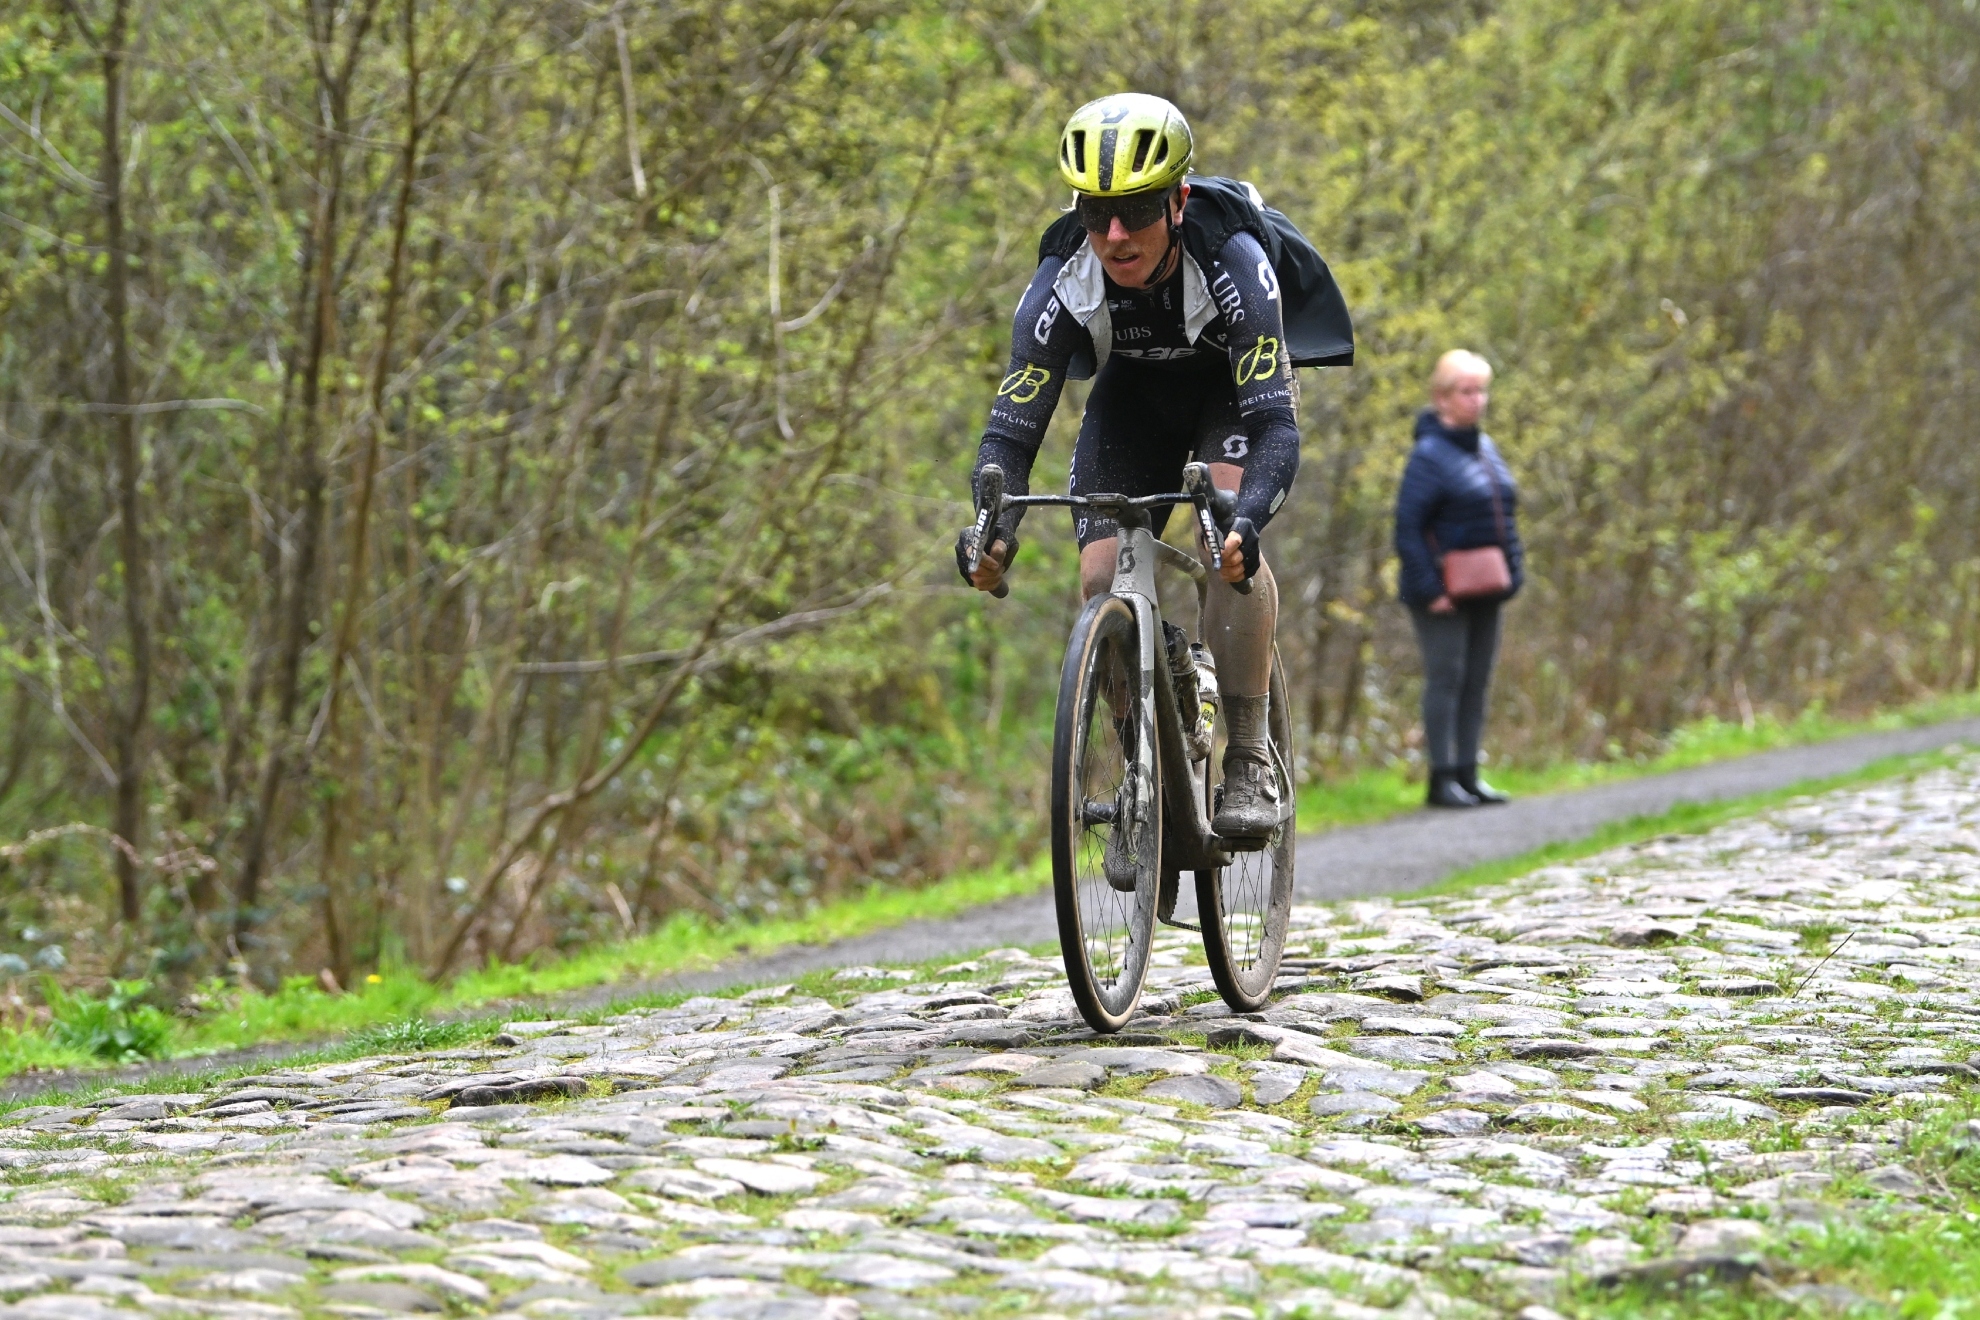 El drama del ltimo en la Pars-Roubaix a 48 minutos de Van der Poel: Son los Juegos del Hambre